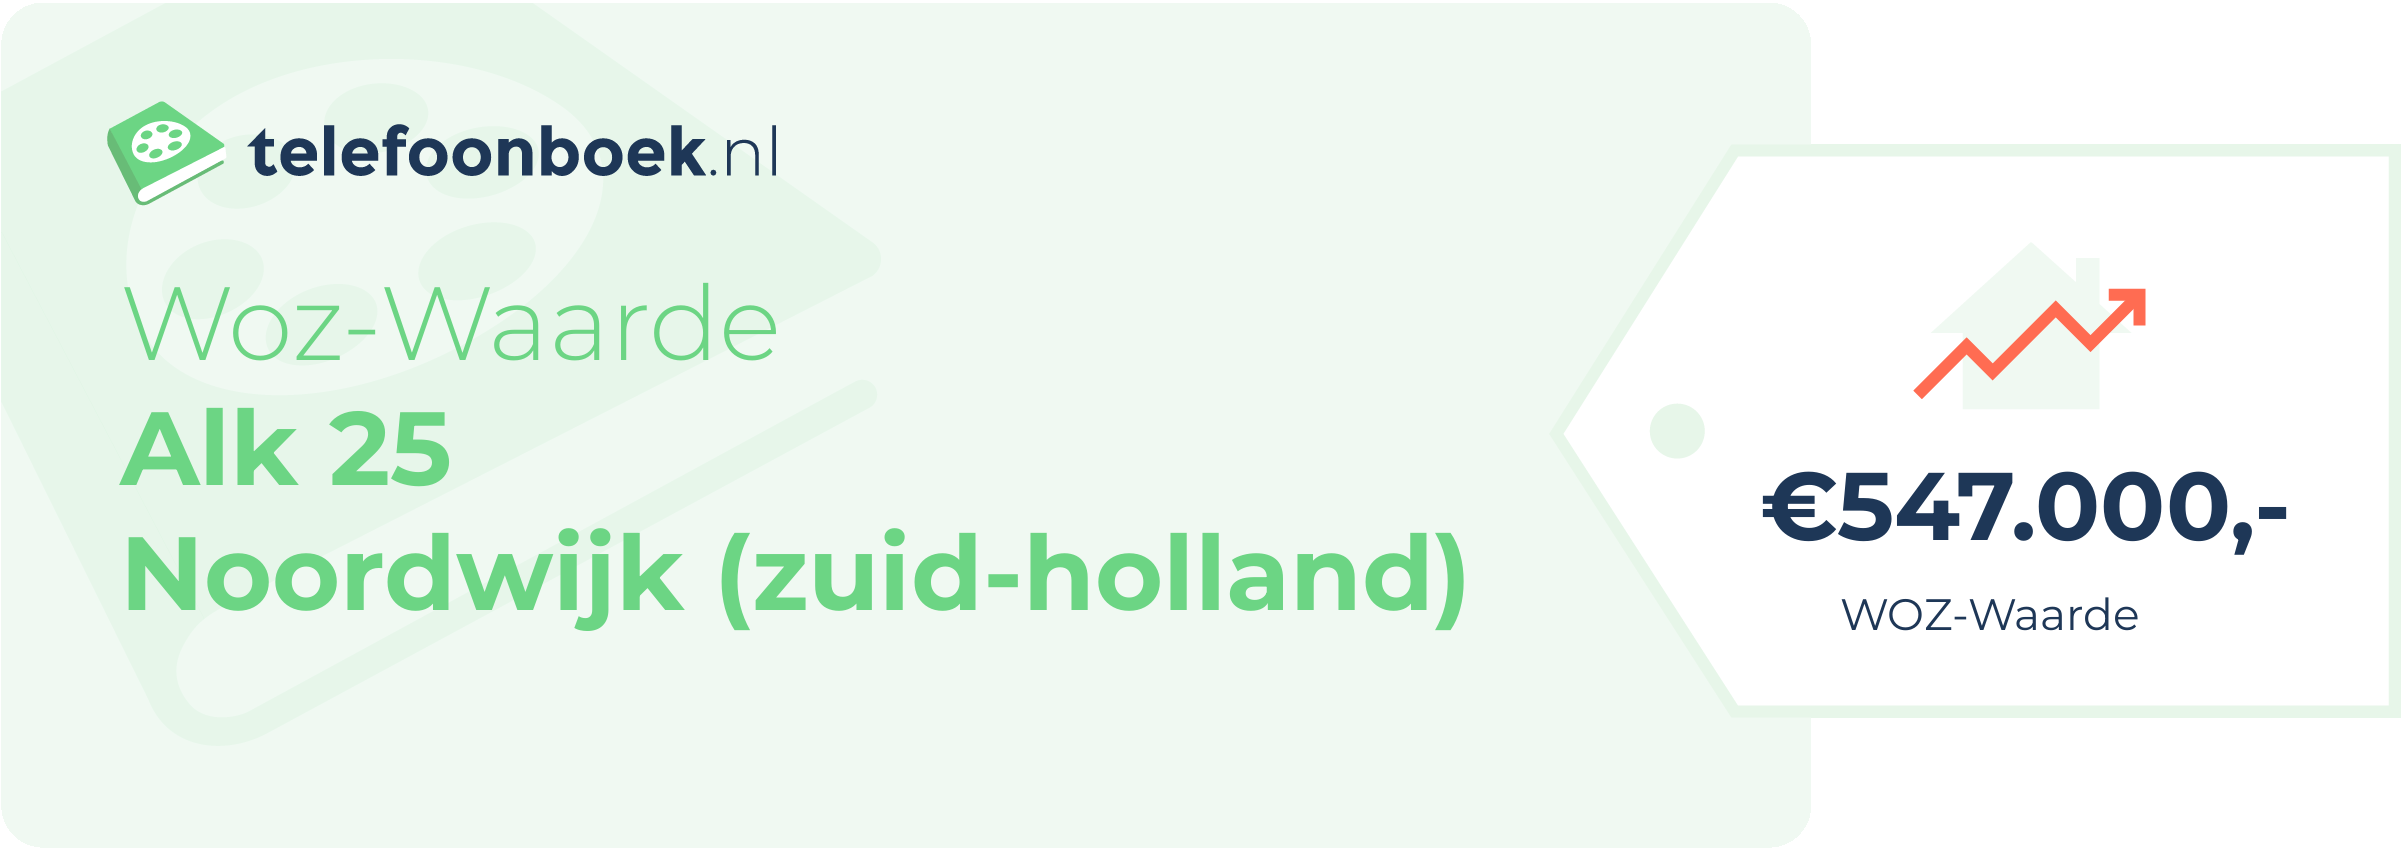 WOZ-waarde Alk 25 Noordwijk (Zuid-Holland)